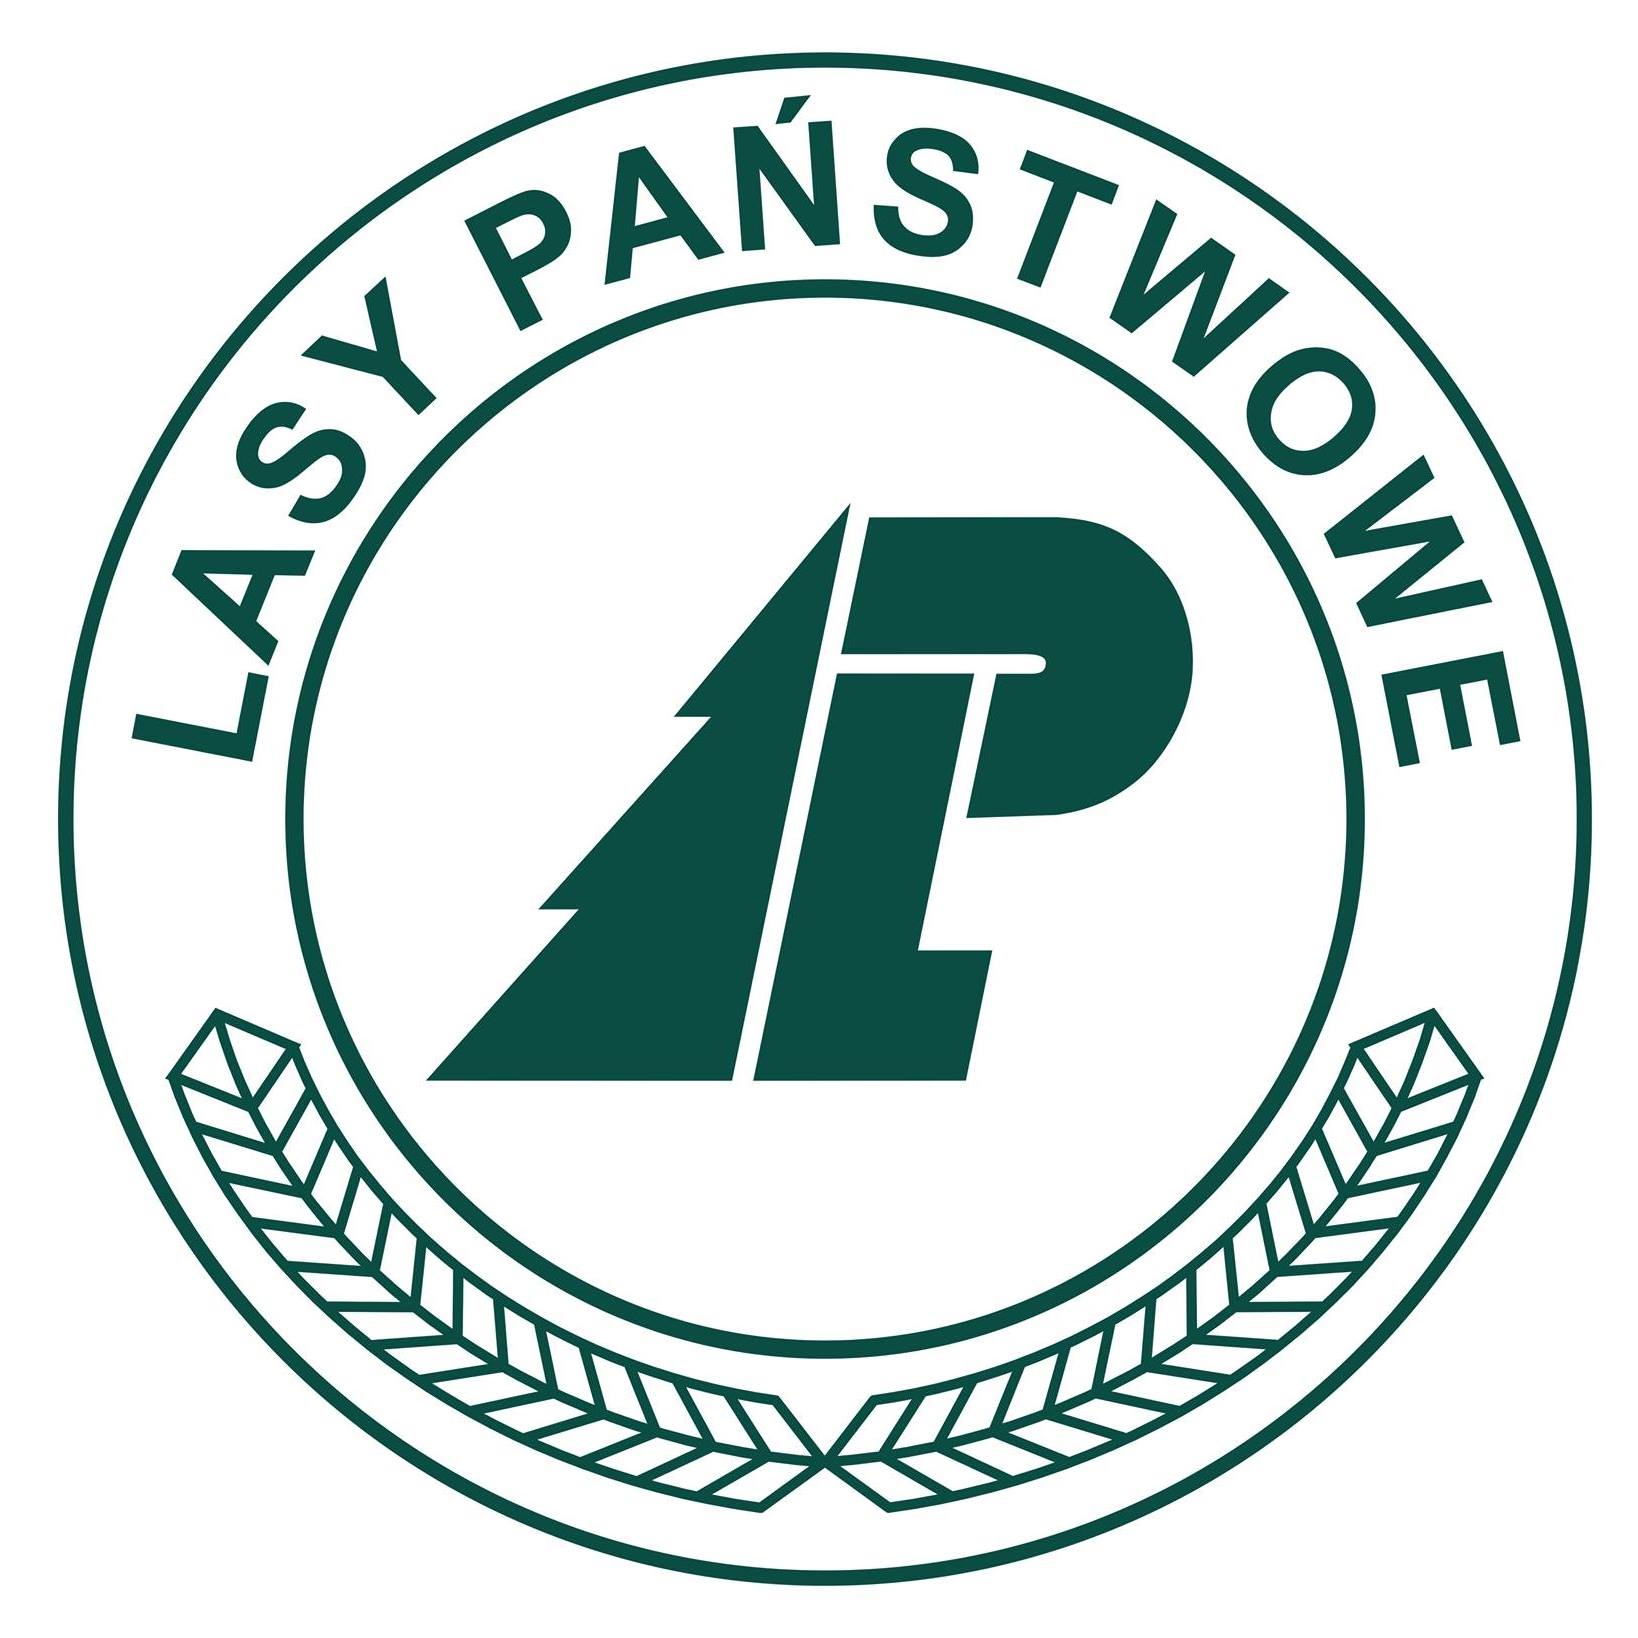 Logo Lasy Państwowe